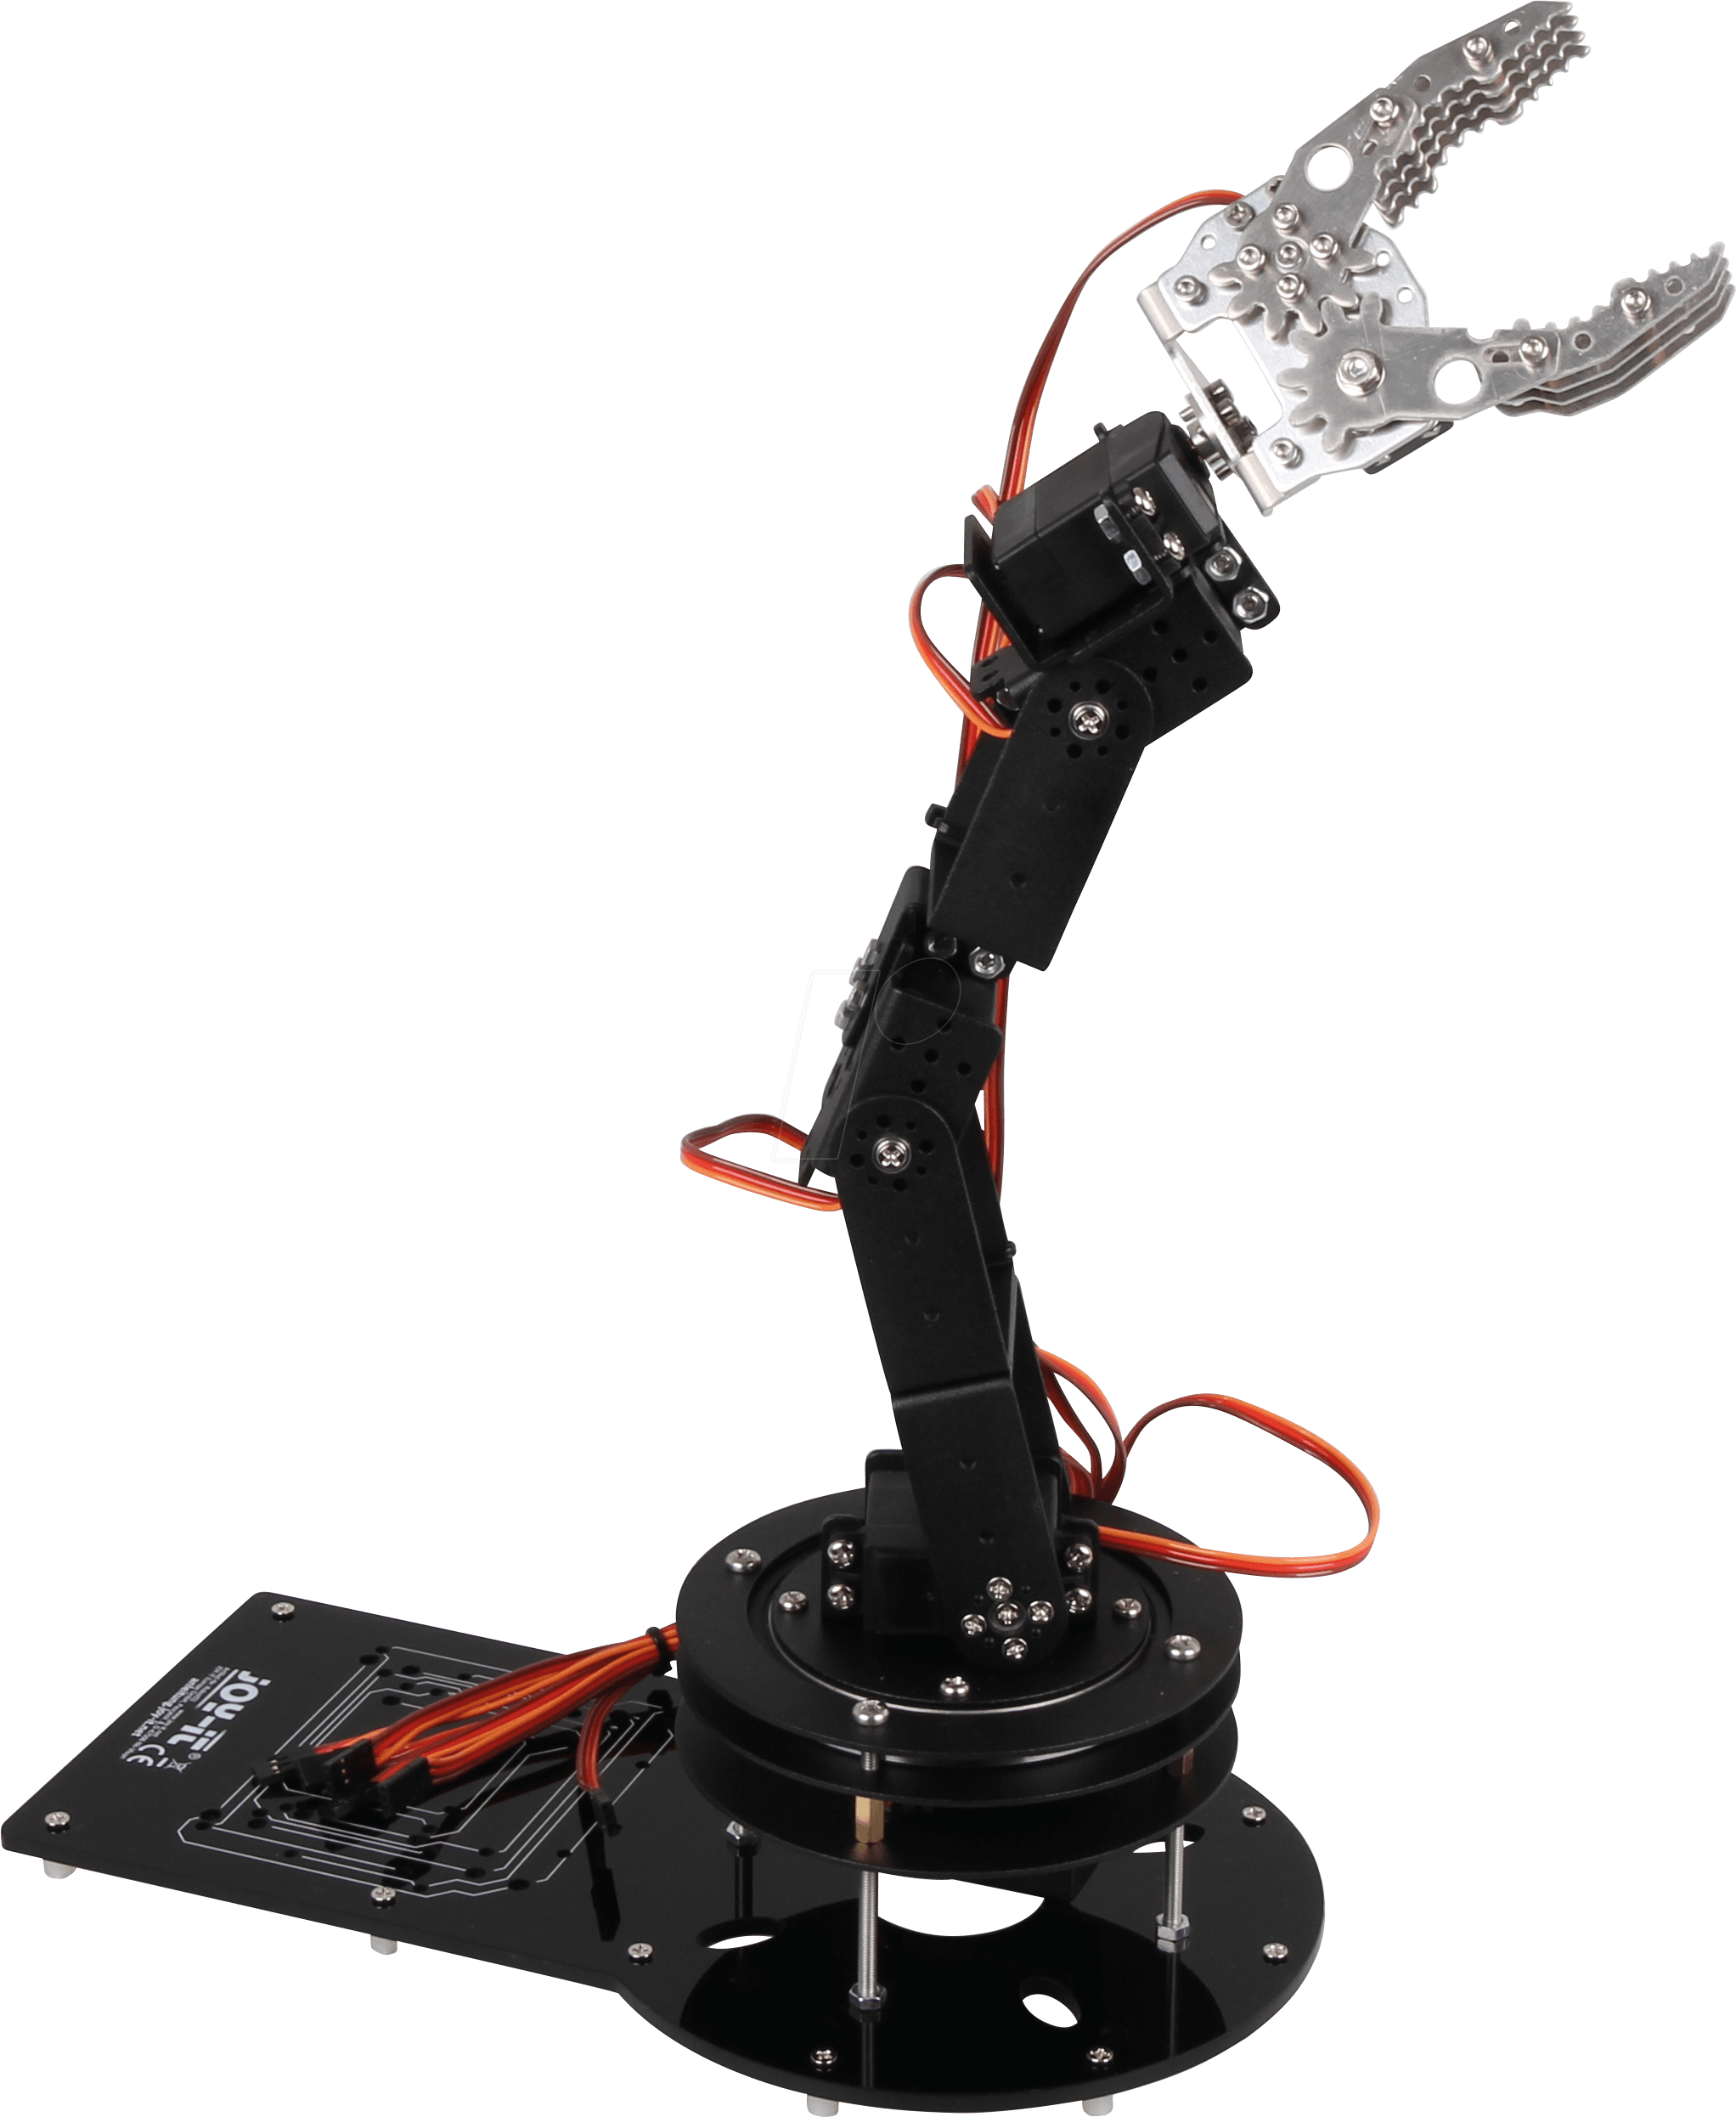 Захваты для роботов манипуляторов. Роботизированная рука Robotics. Applied Robotics робот-манипулятор. Манипулятор клешня Claw. Робот манипулятор ra/la1200.